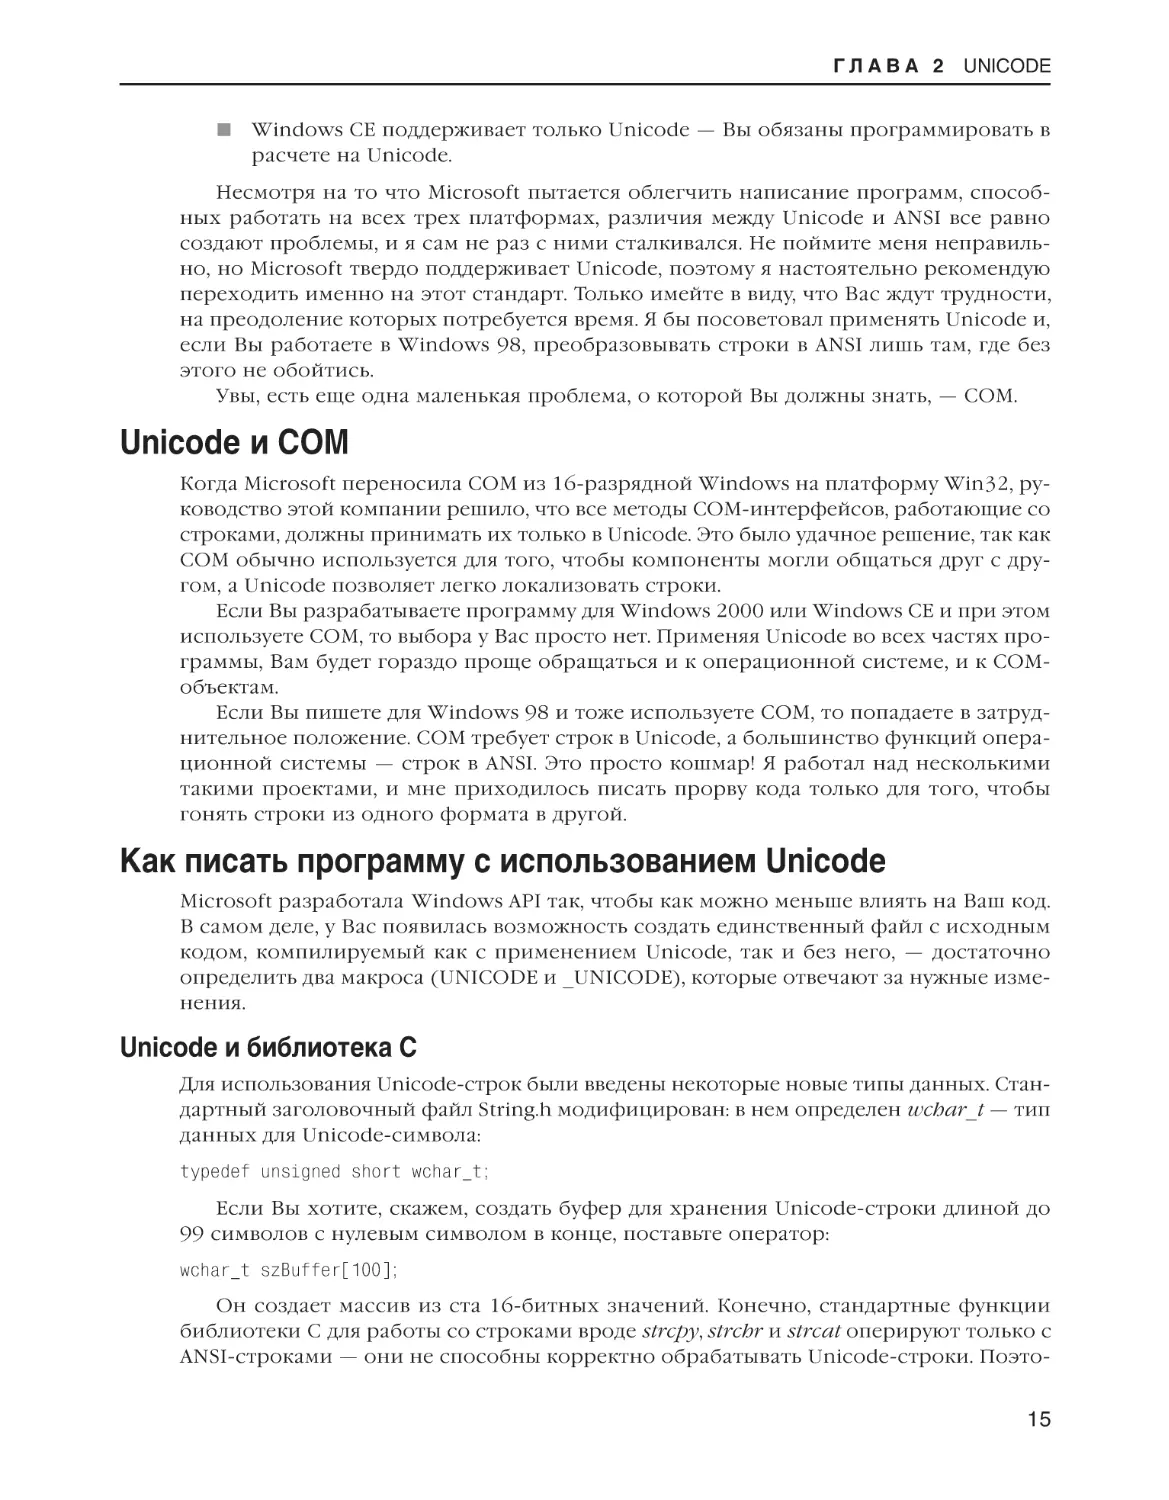 Unicode и COM
Как писать программу с использованием Unicode
Unicode и библиотека C